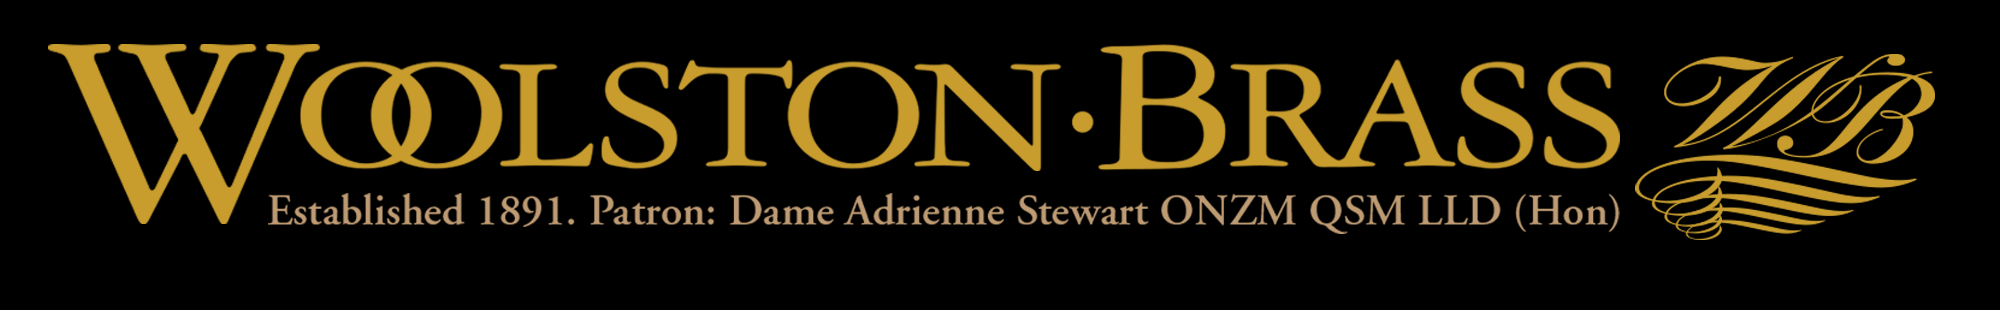 Woolston Brass – Established 1891 • Patron: Dame Adrienne Stewart